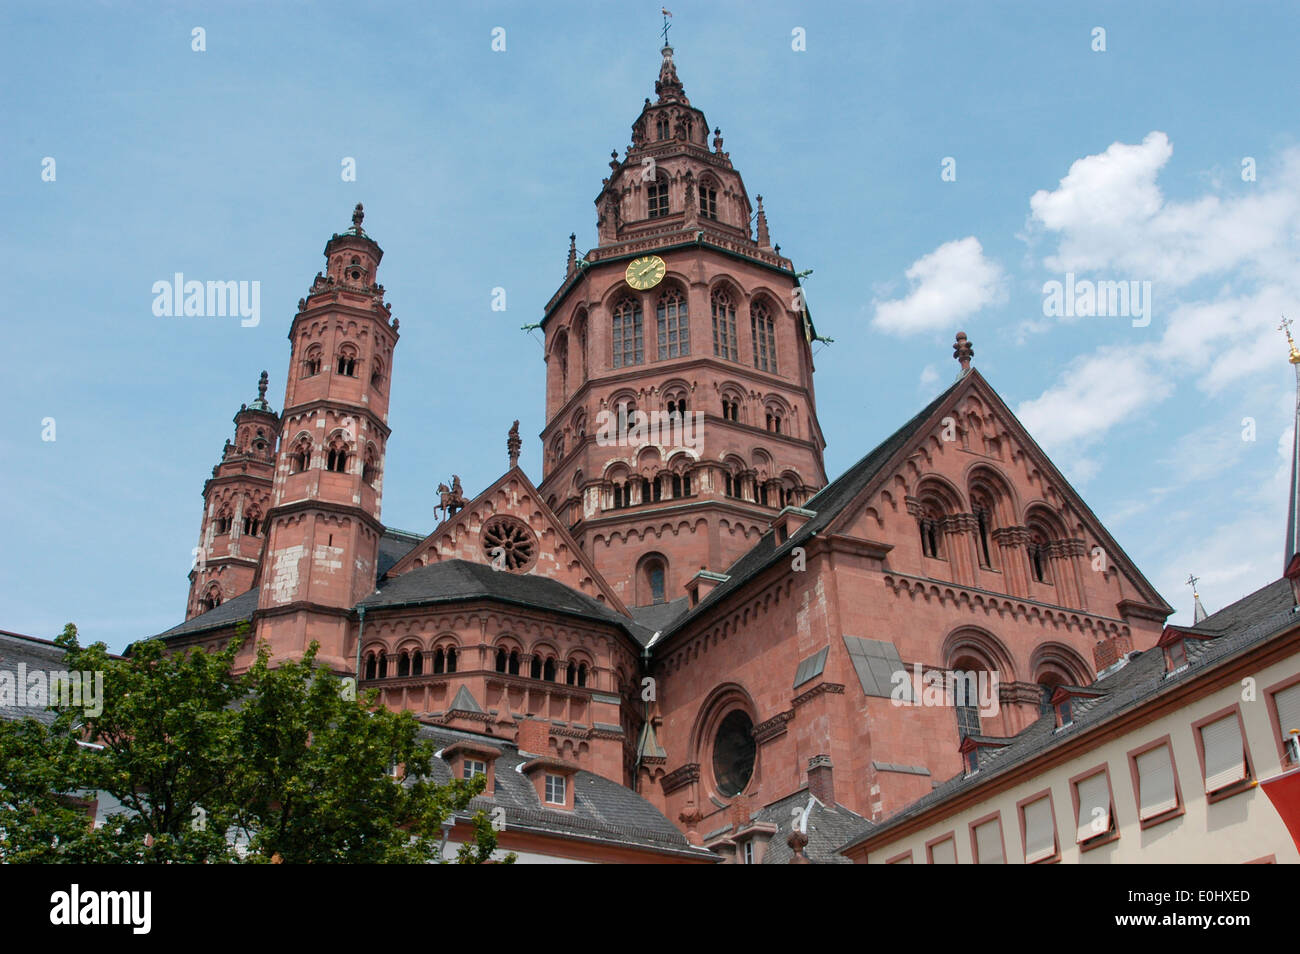 Germania, Deutschland, Mainz, Dom Foto Stock